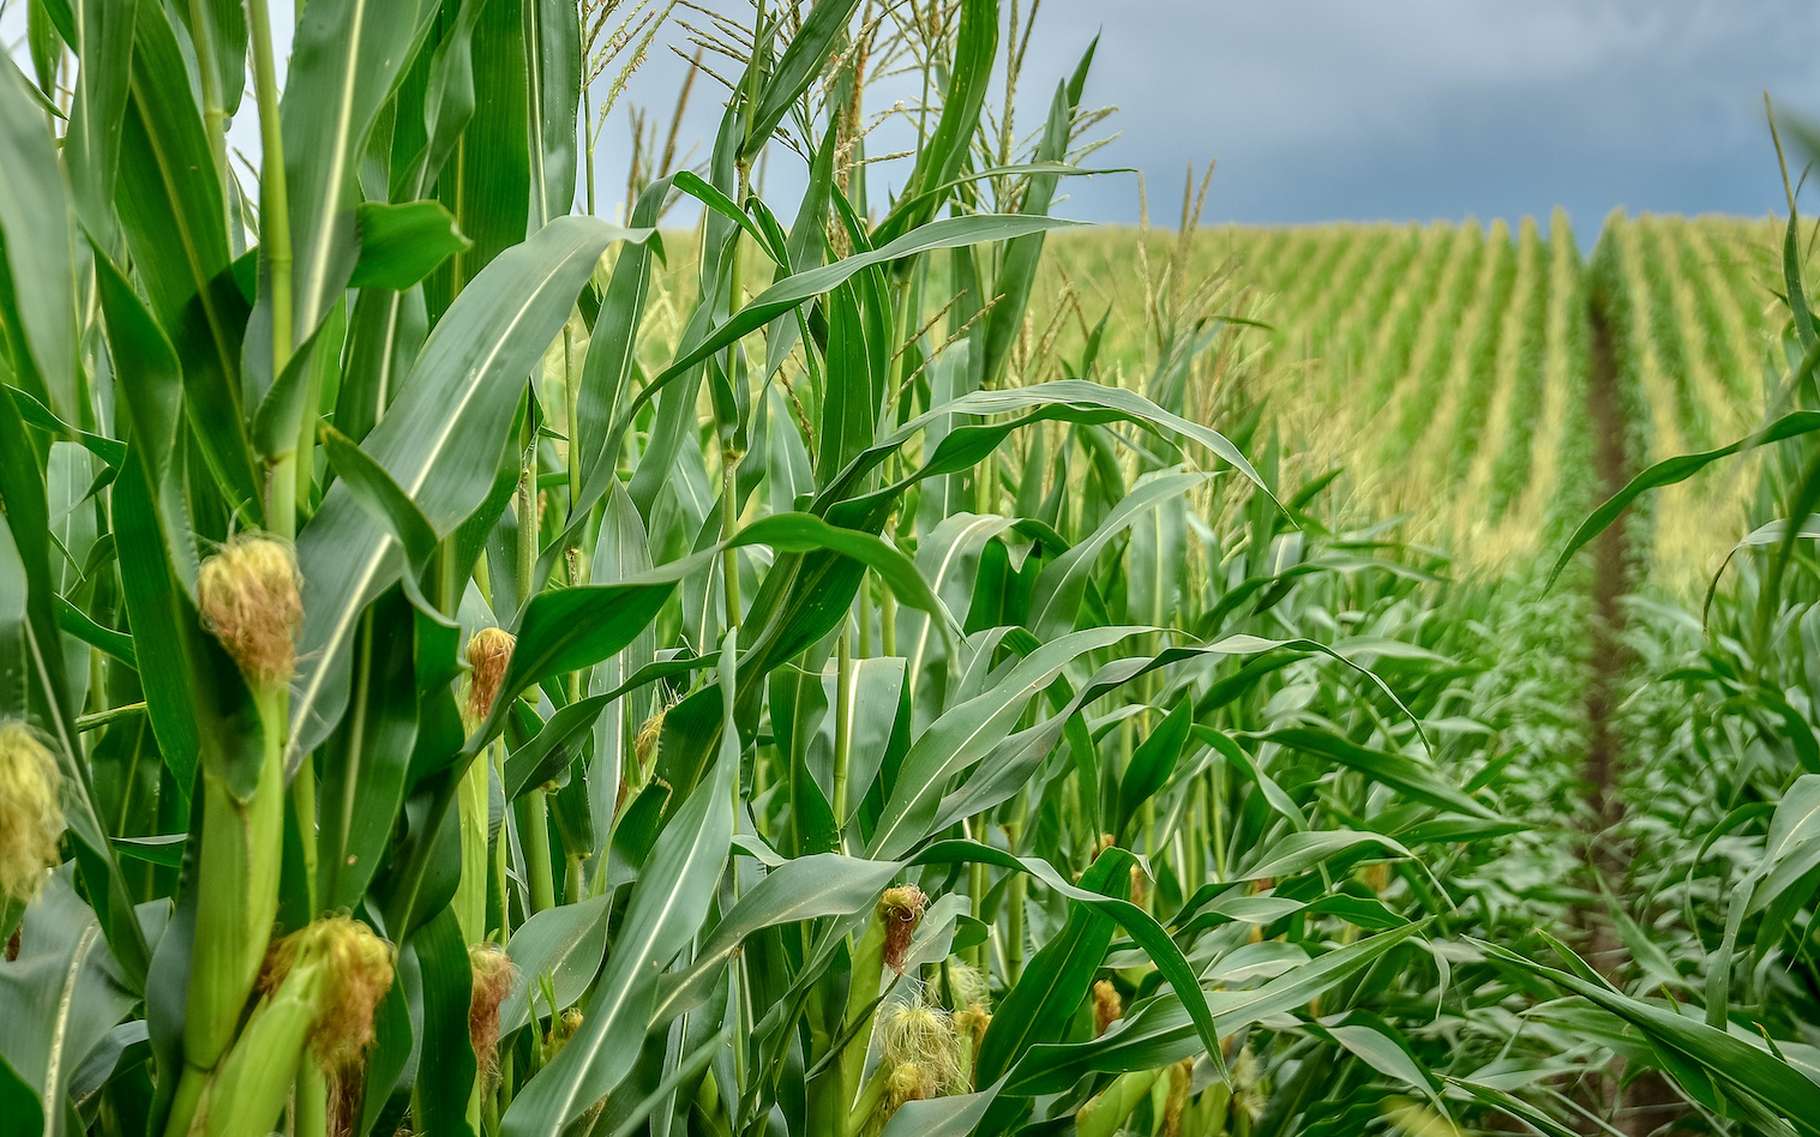 D'ici la fin du siècle, les cultures de maïs devraient s'effondrer dans le monde tandis que celles de blé vont progresser. © kyrychukvitaliy, Adobe Stock